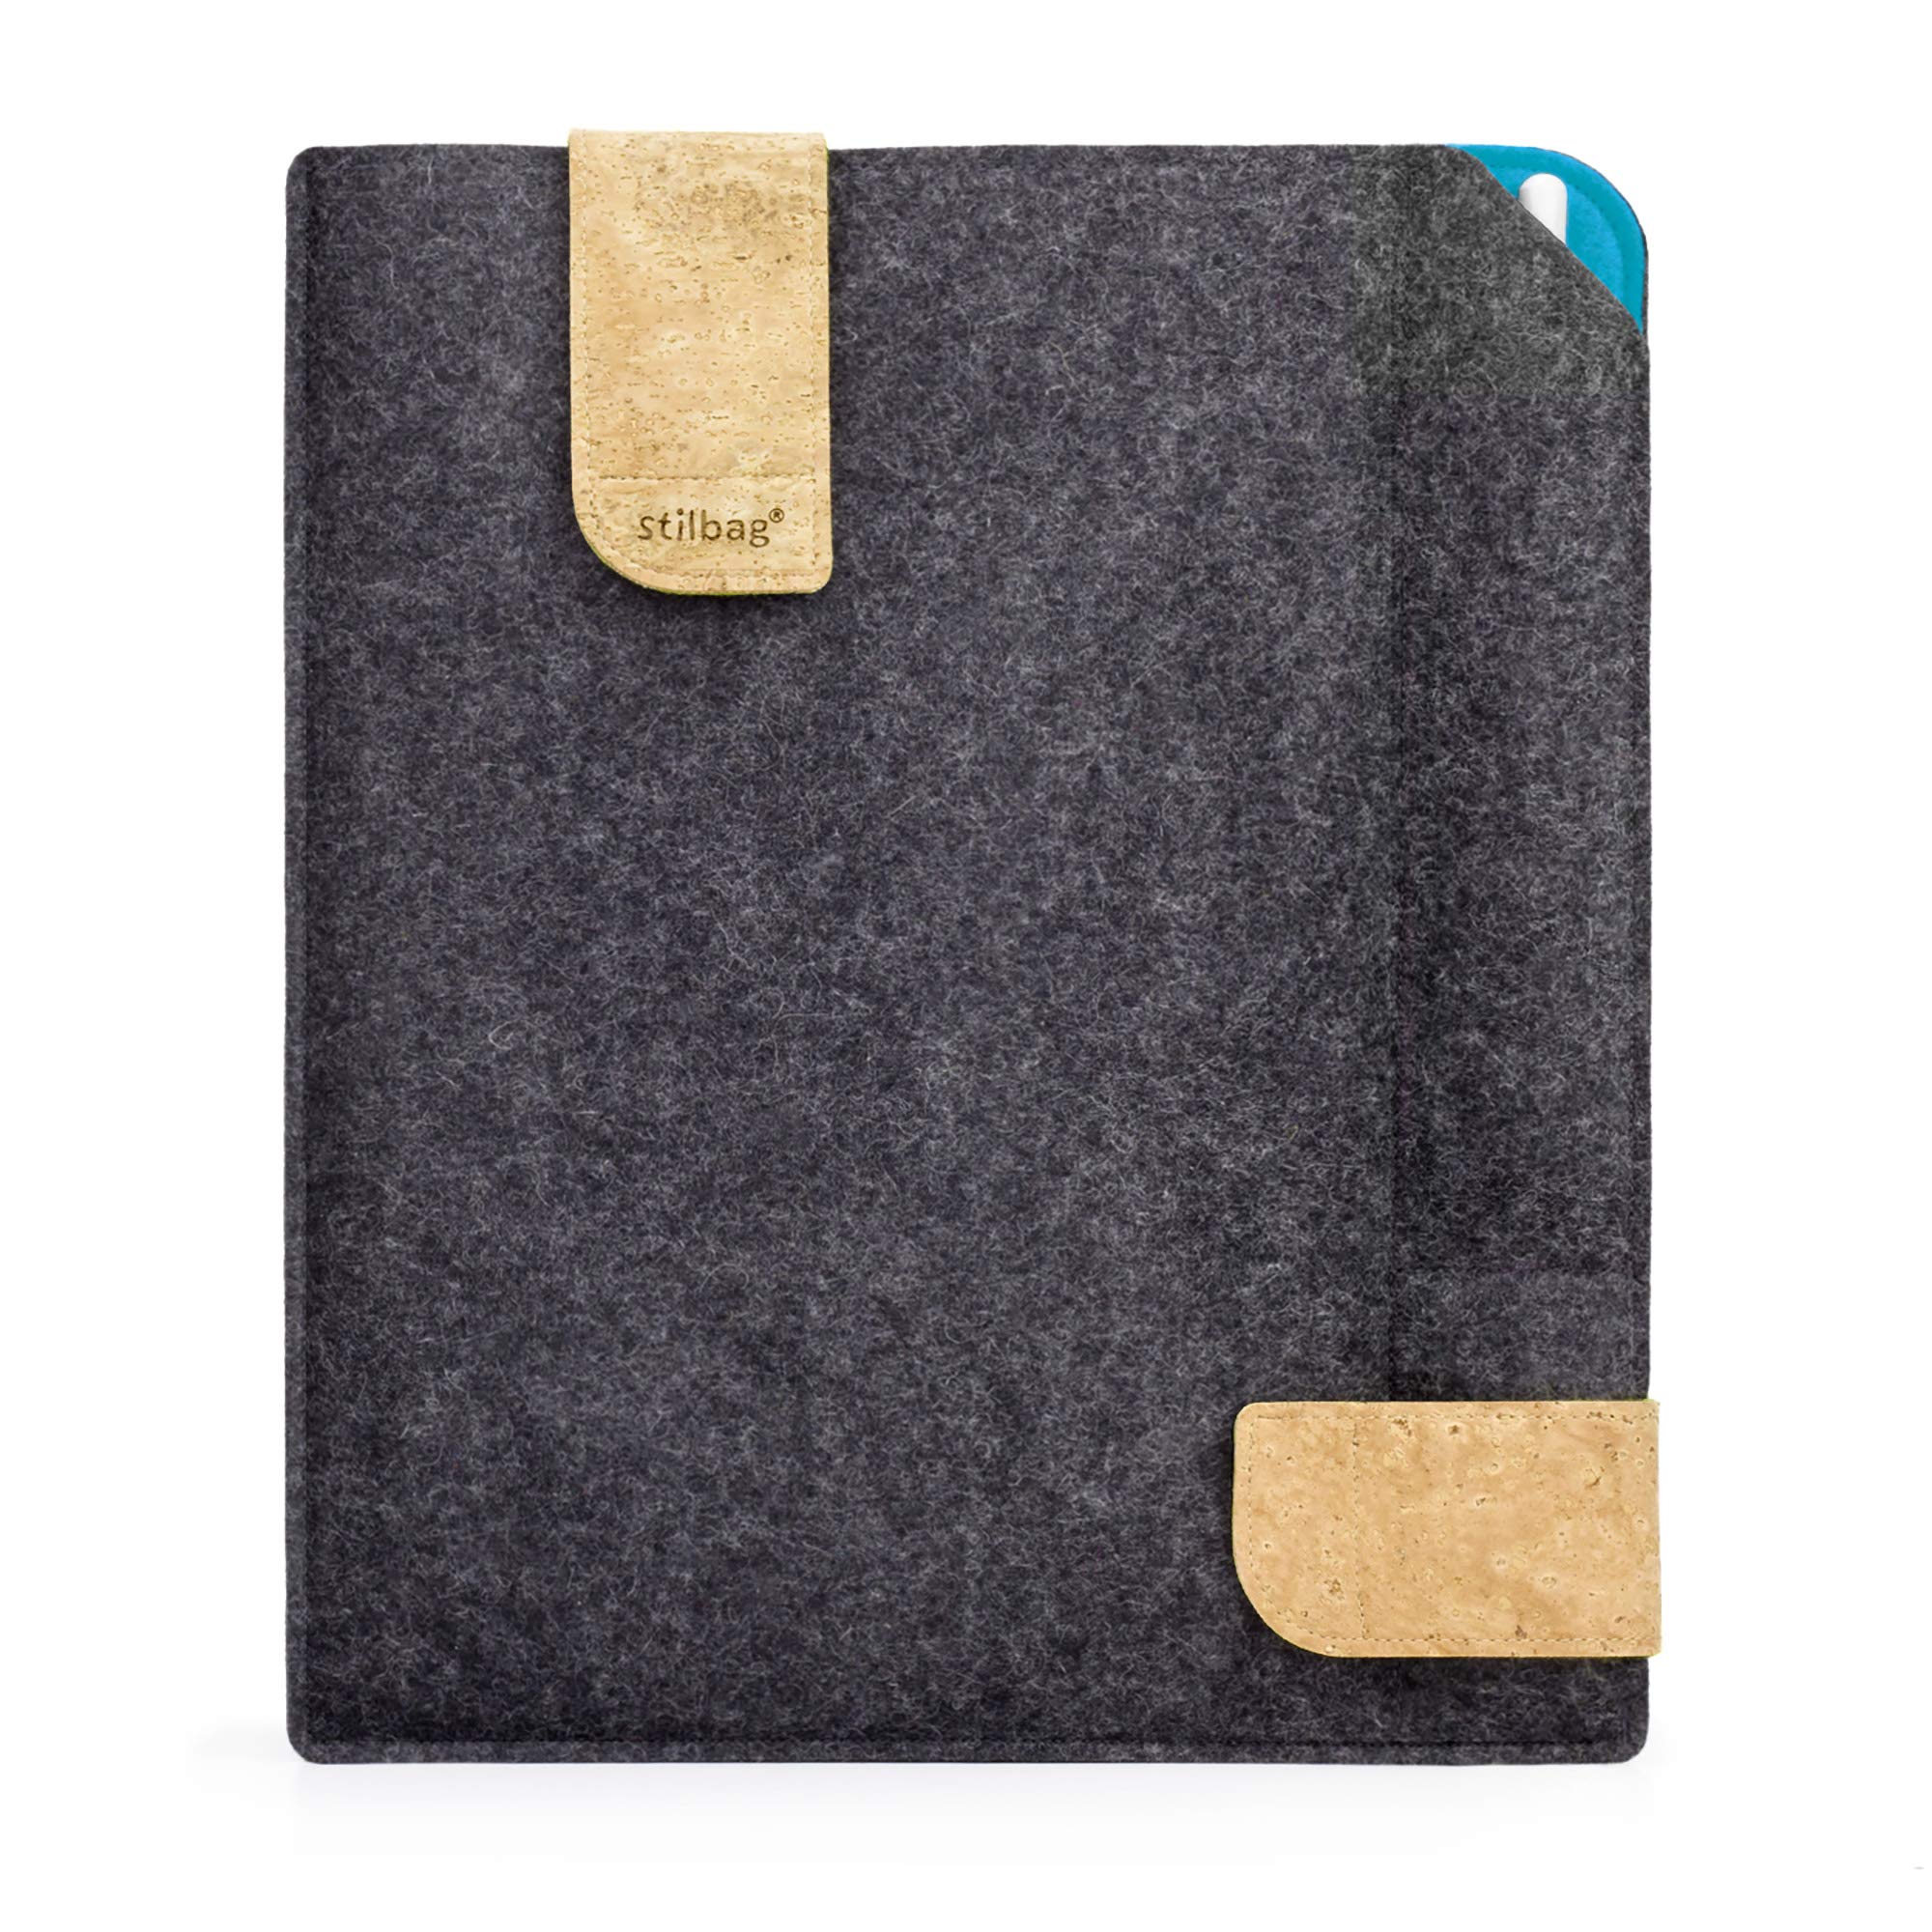 Stilbag Filztasche für Samsung Galaxy Tab S5e | Etui Case aus Merino Wollfilz und Kork mit Stylus Fach | Modell KUNO in anthrazit - Azur | Tablet Schutz-Tasche Made in Germany